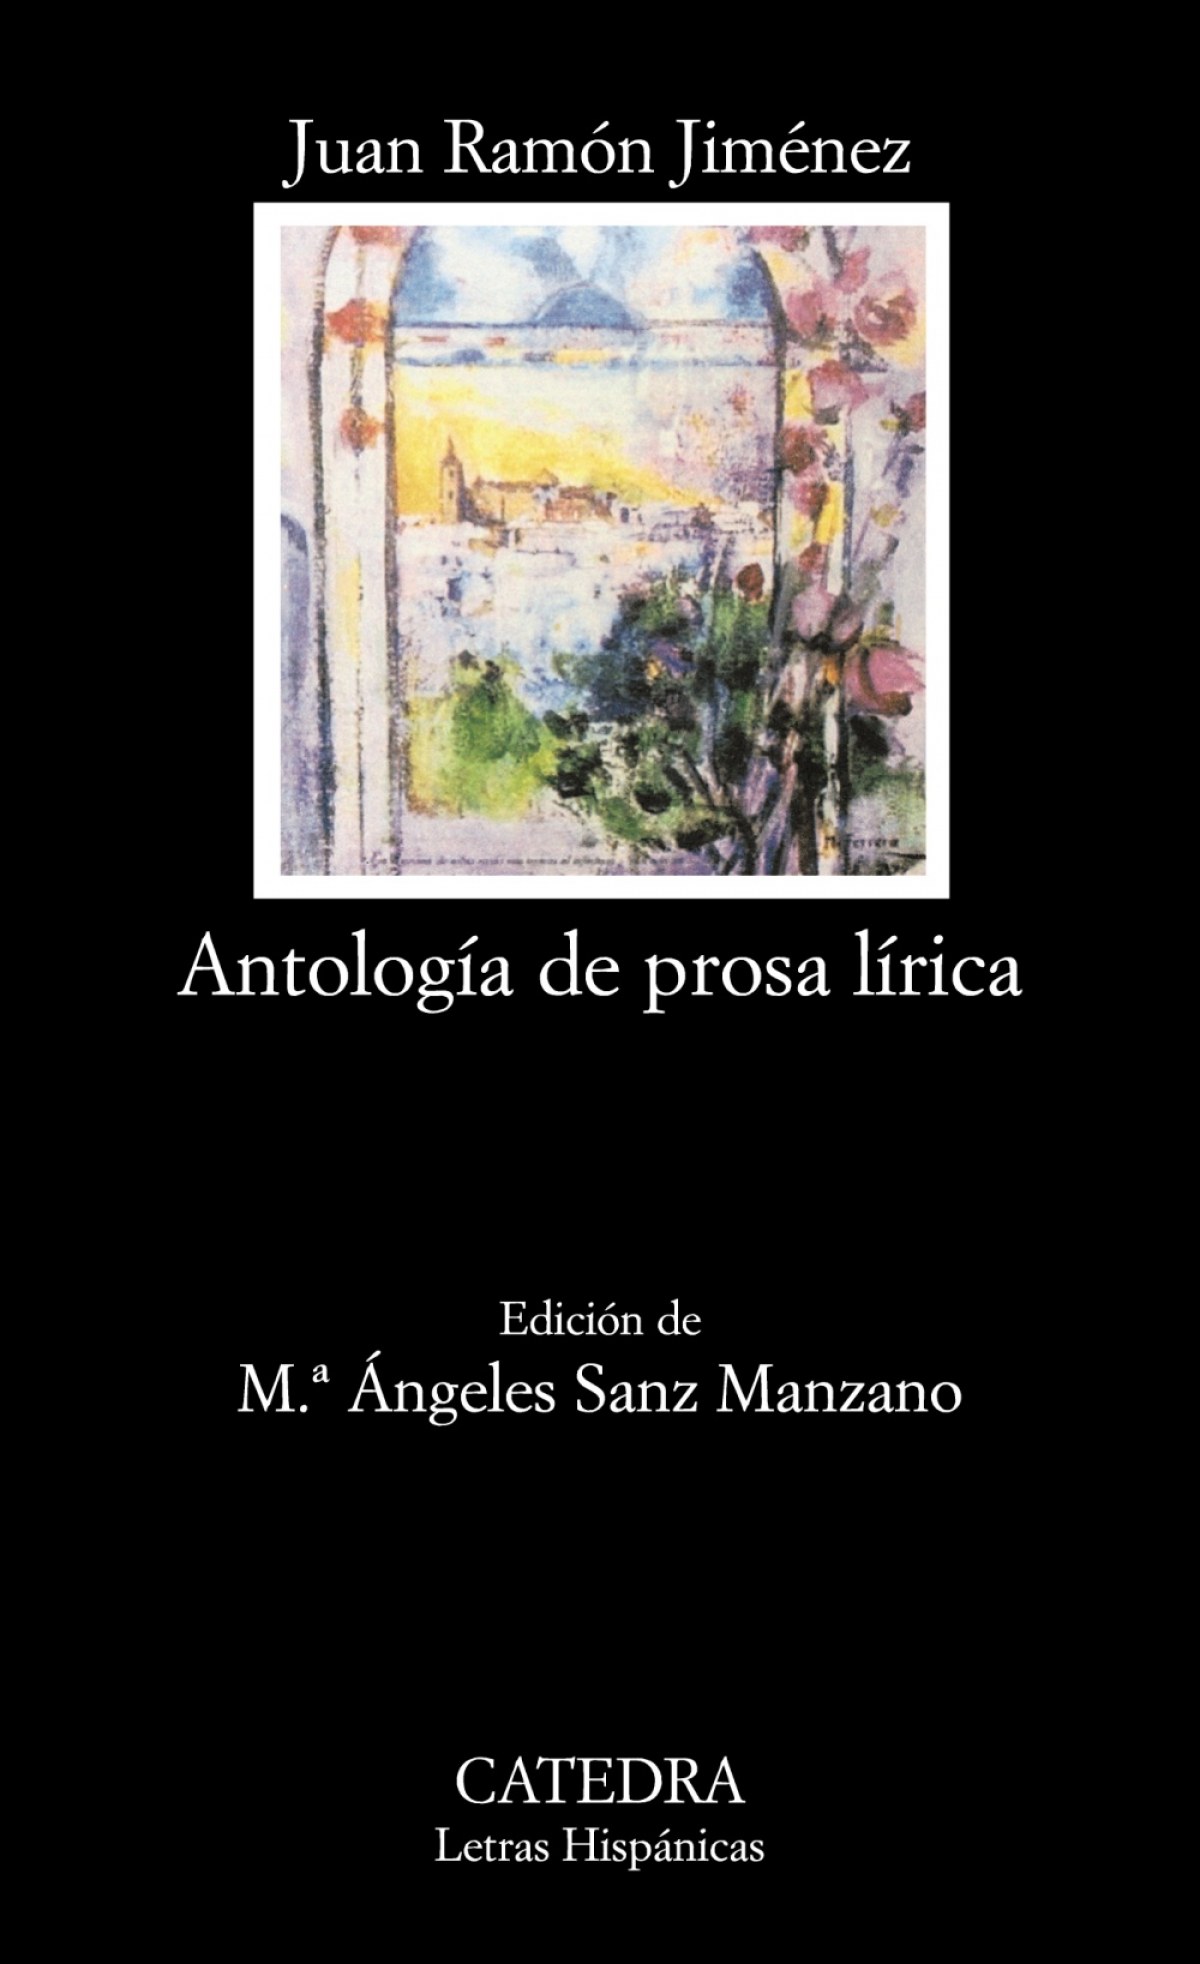 AntologÍa de prosa lÍrica - Jiménez, Juán Ramón